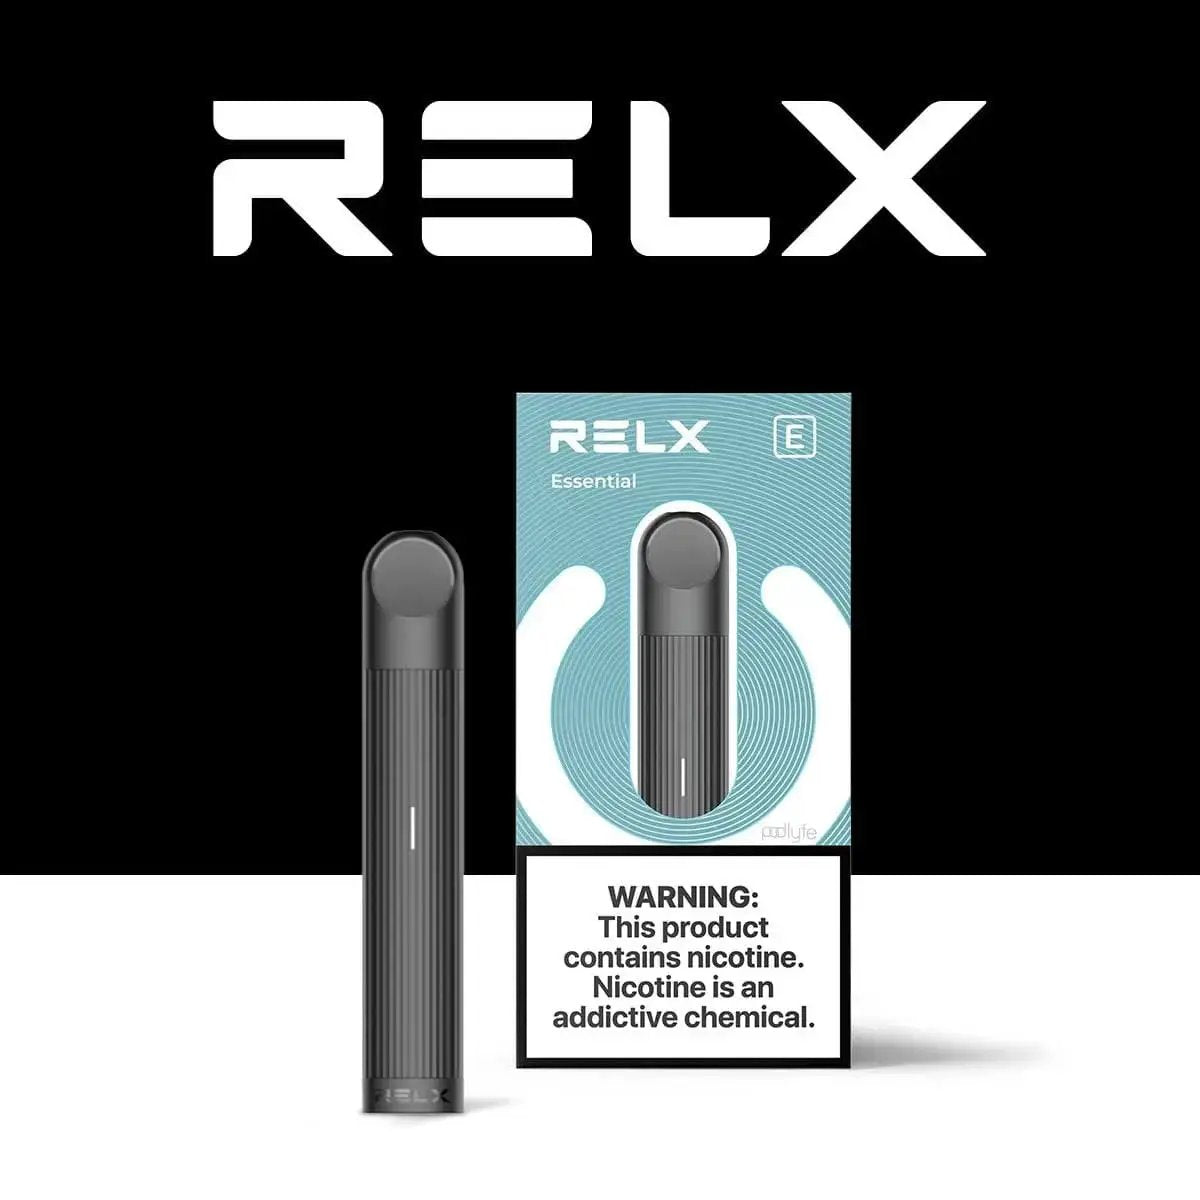 RELX Essential